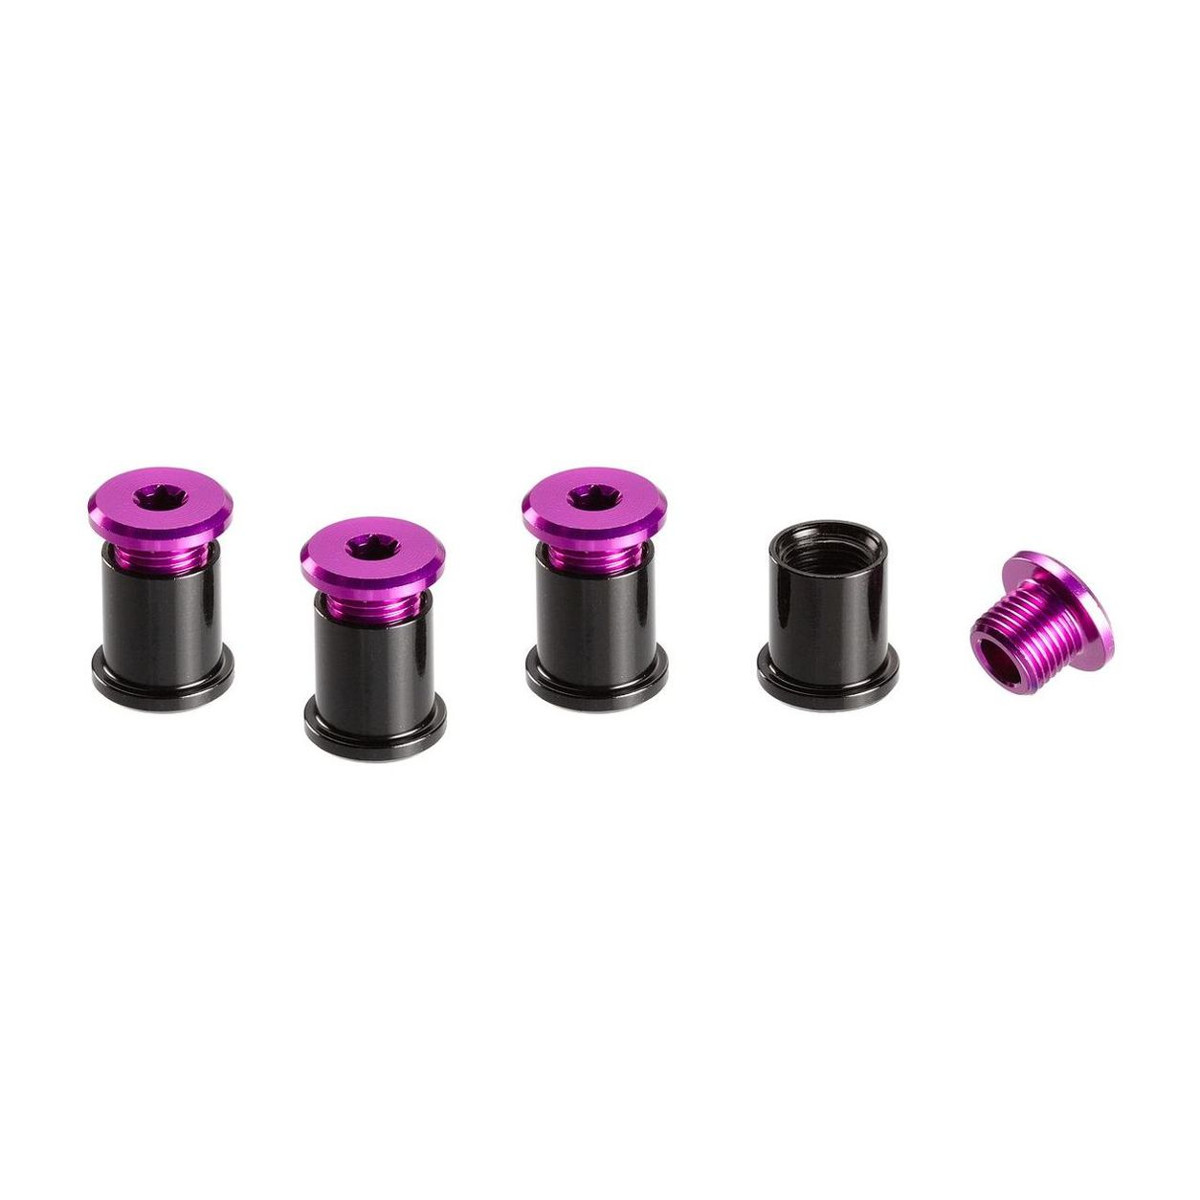 E*thirteen Kit Viti Corona  Purple, Aluminium, T25 6 mm Screws/ T30 11 mm Nuts, 4 pcs each